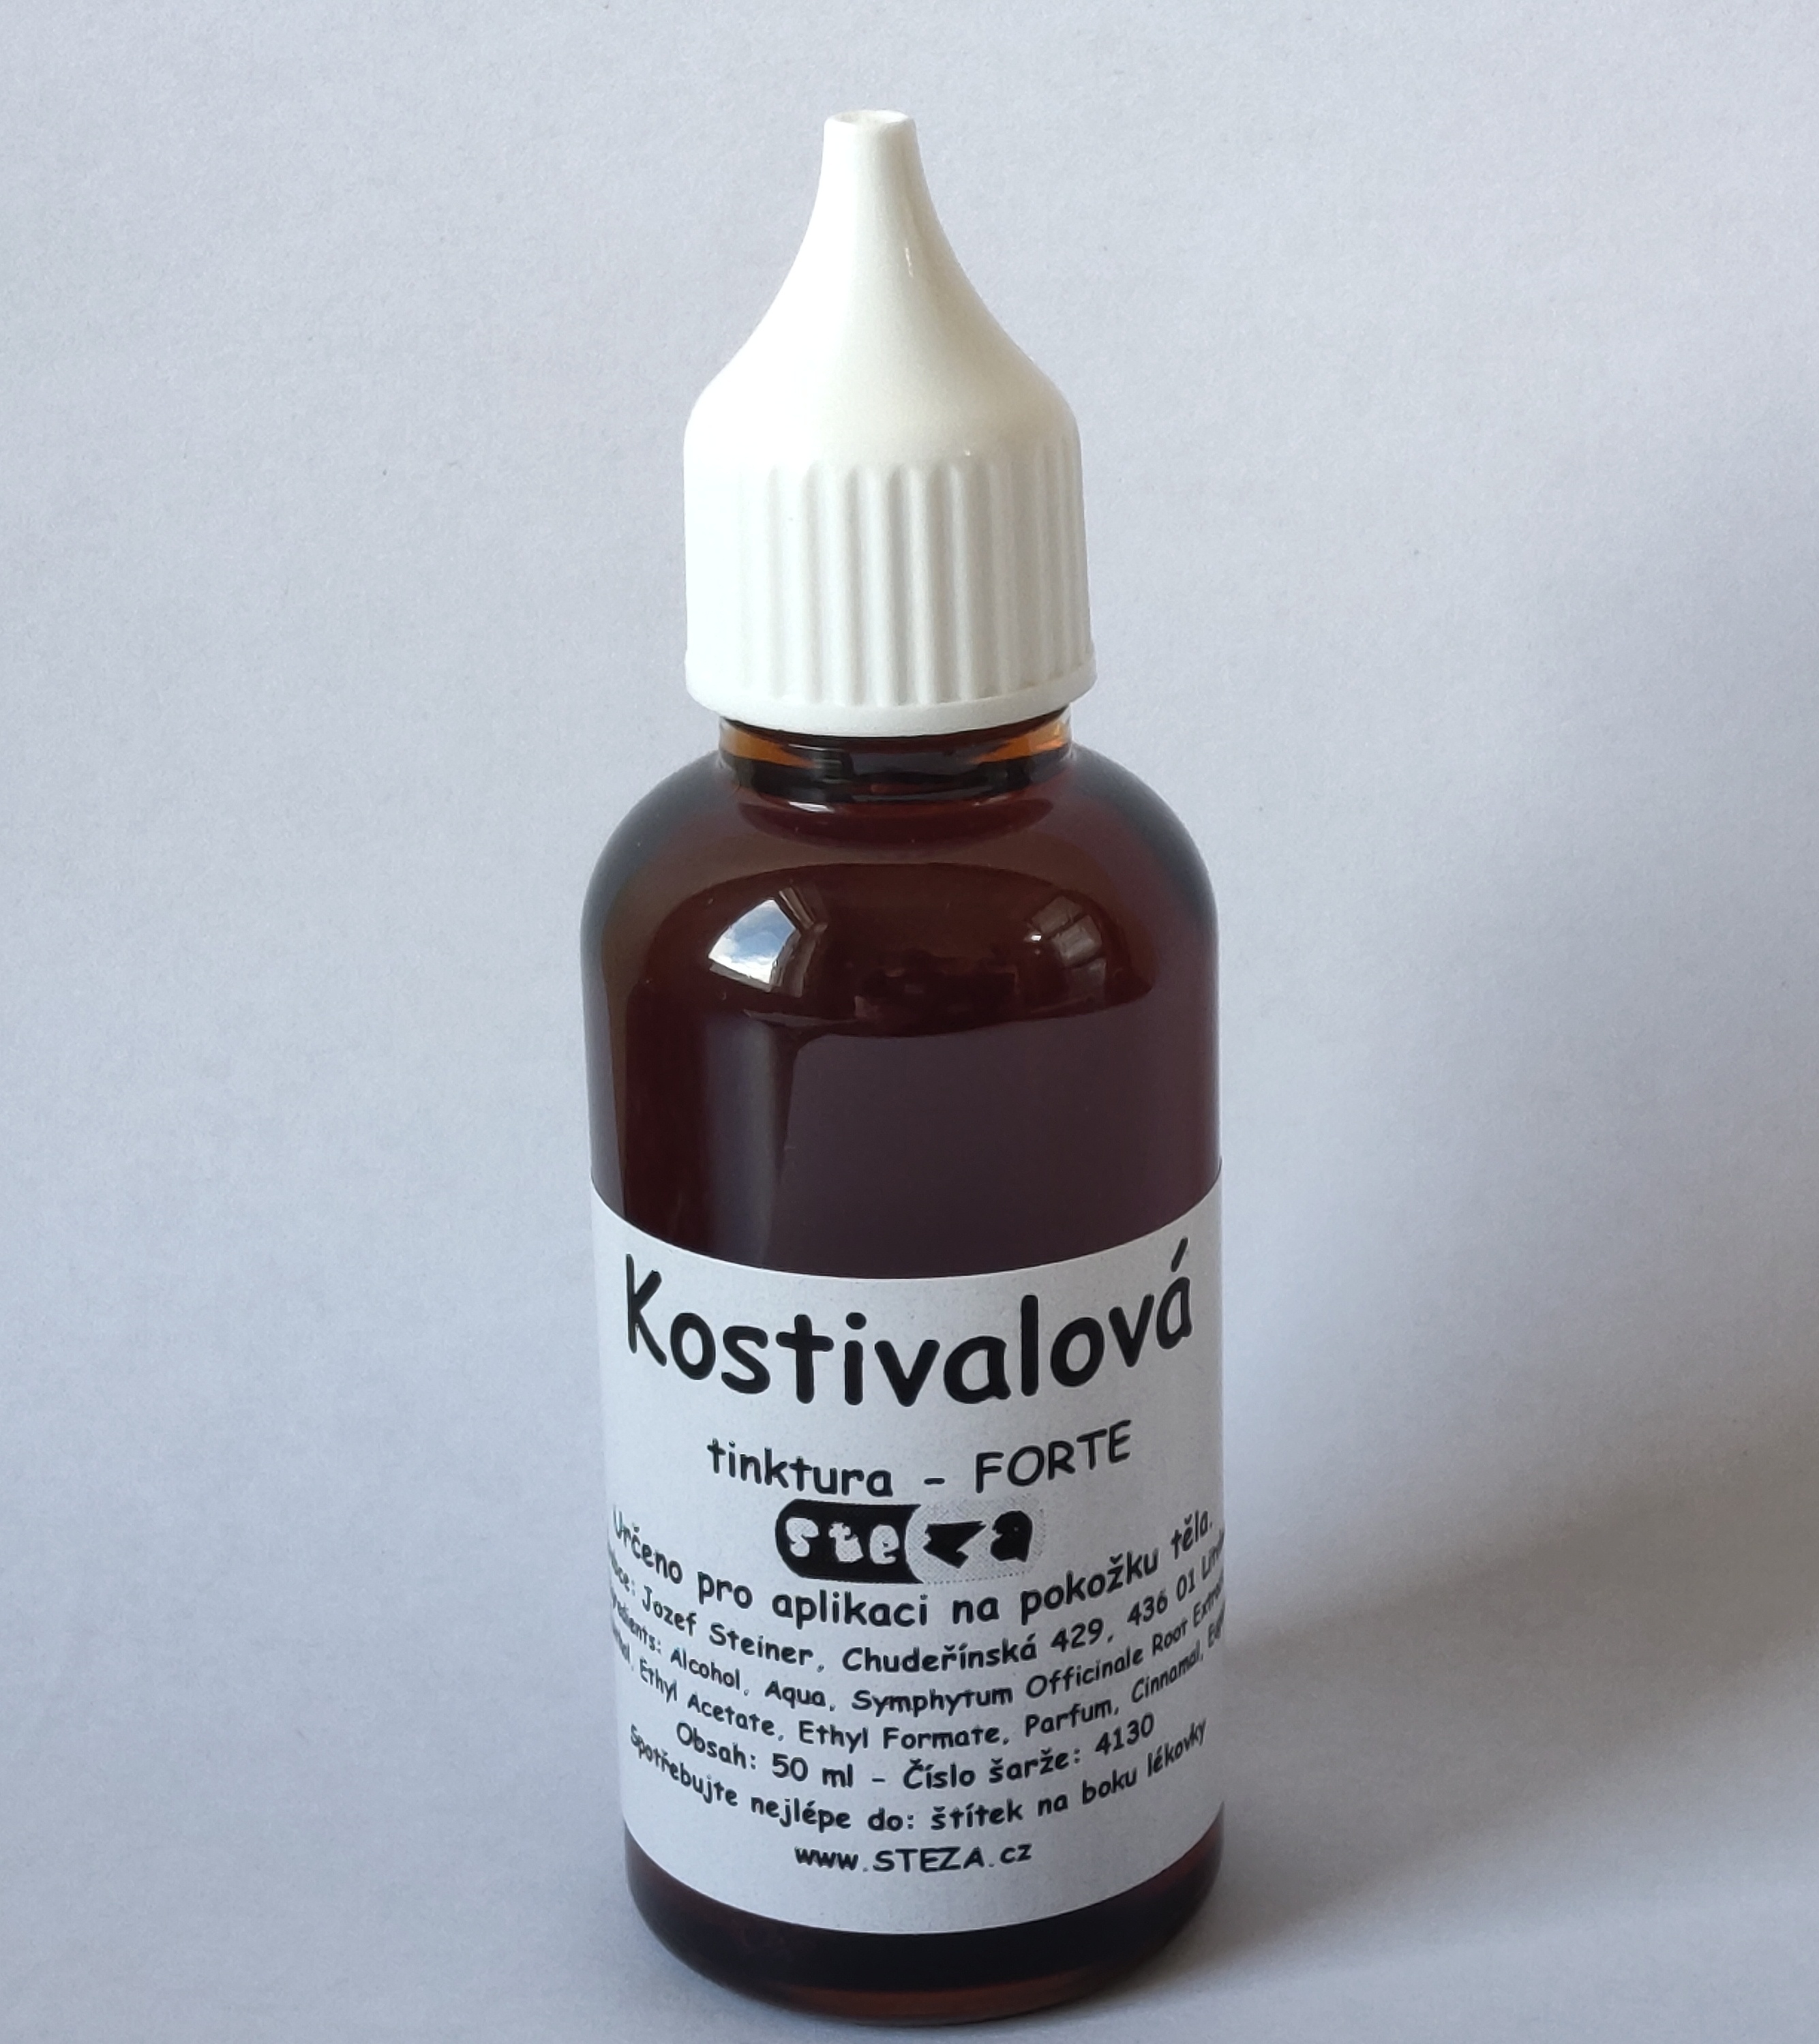 STEZA - Kostivalová tinktura - FORTE 5x lékovka po 50 ml. (Kostivalová tinktura)